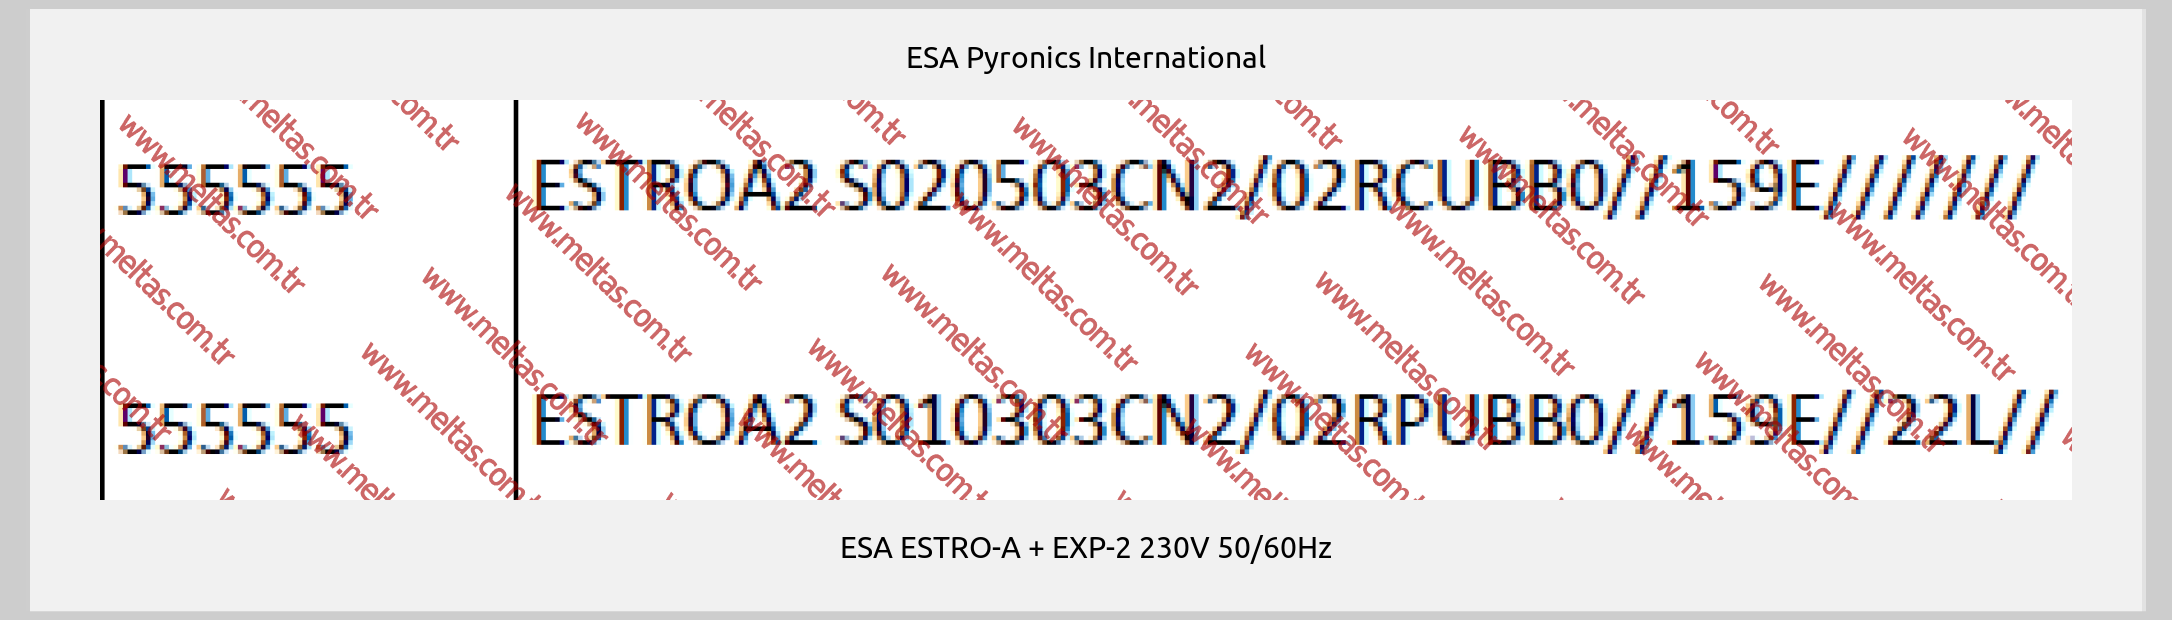 ESA Pyronics International - ESA ESTRO-A + EXP-2 230V 50/60Hz